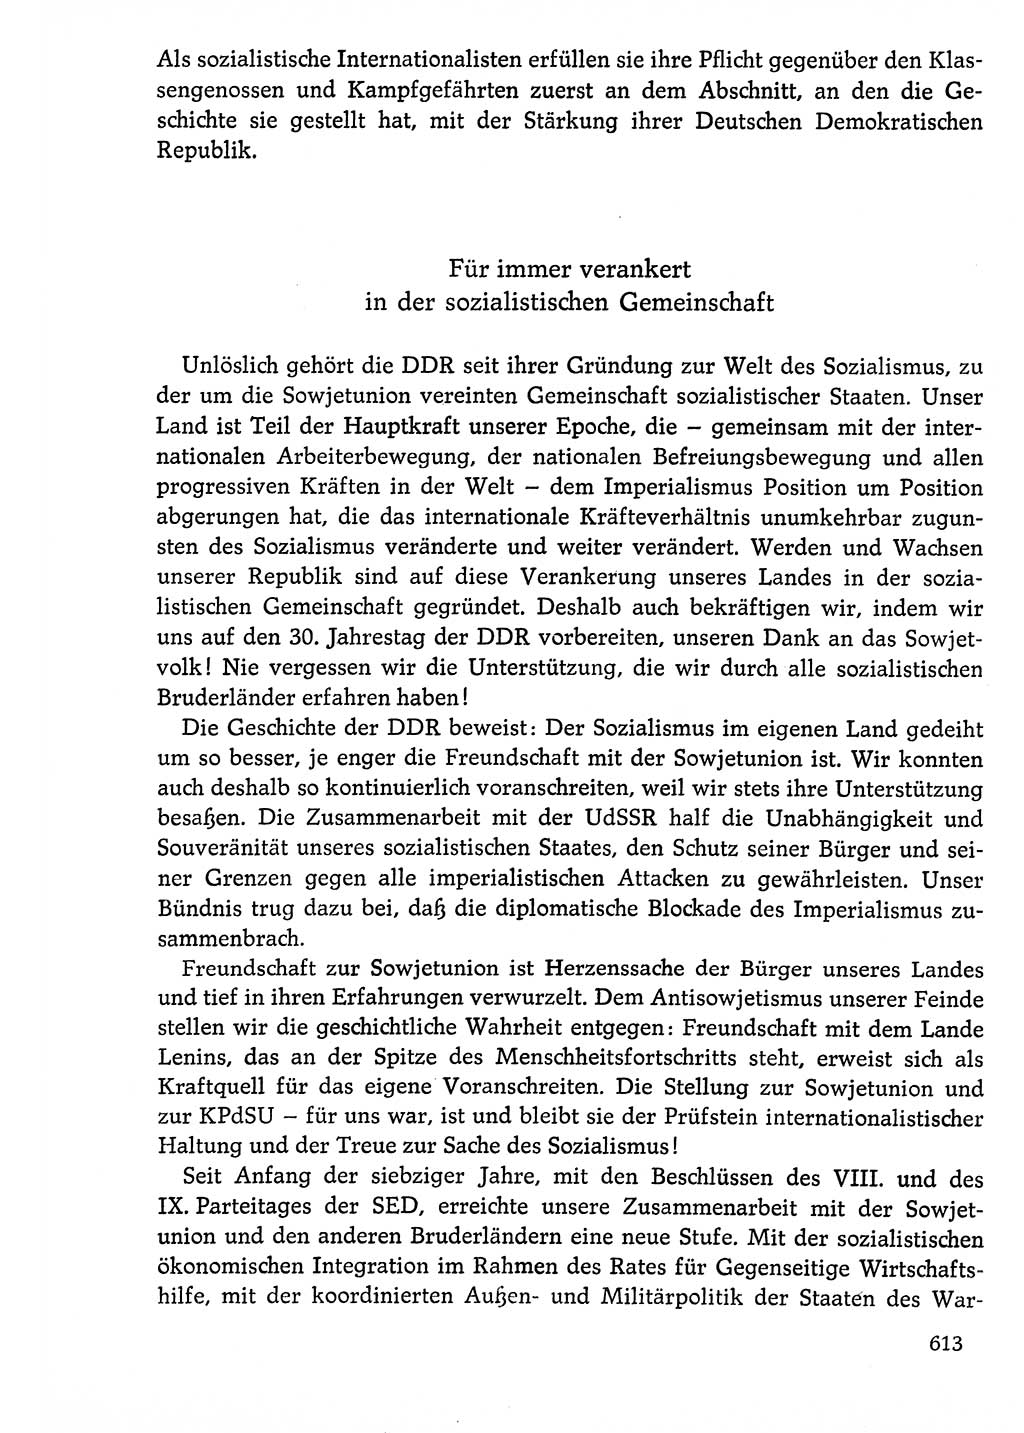 Dokumente der Sozialistischen Einheitspartei Deutschlands (SED) [Deutsche Demokratische Republik (DDR)] 1976-1977, Seite 613 (Dok. SED DDR 1976-1977, S. 613)